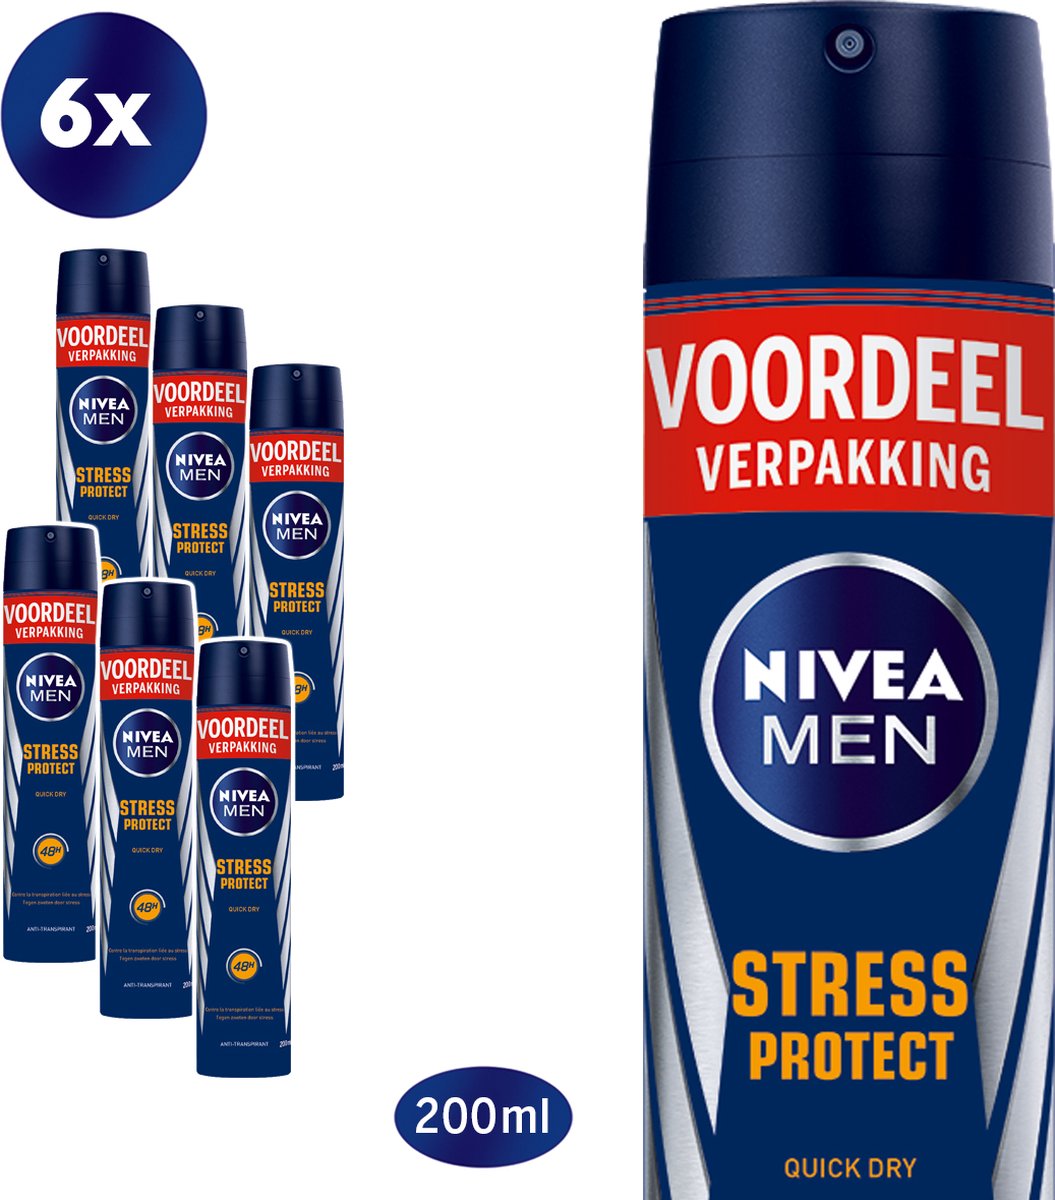 NIVEA MEN Stress Protect - 6 x 200ml - Voordeelverpakking - Deodorant Spray - NIVEA